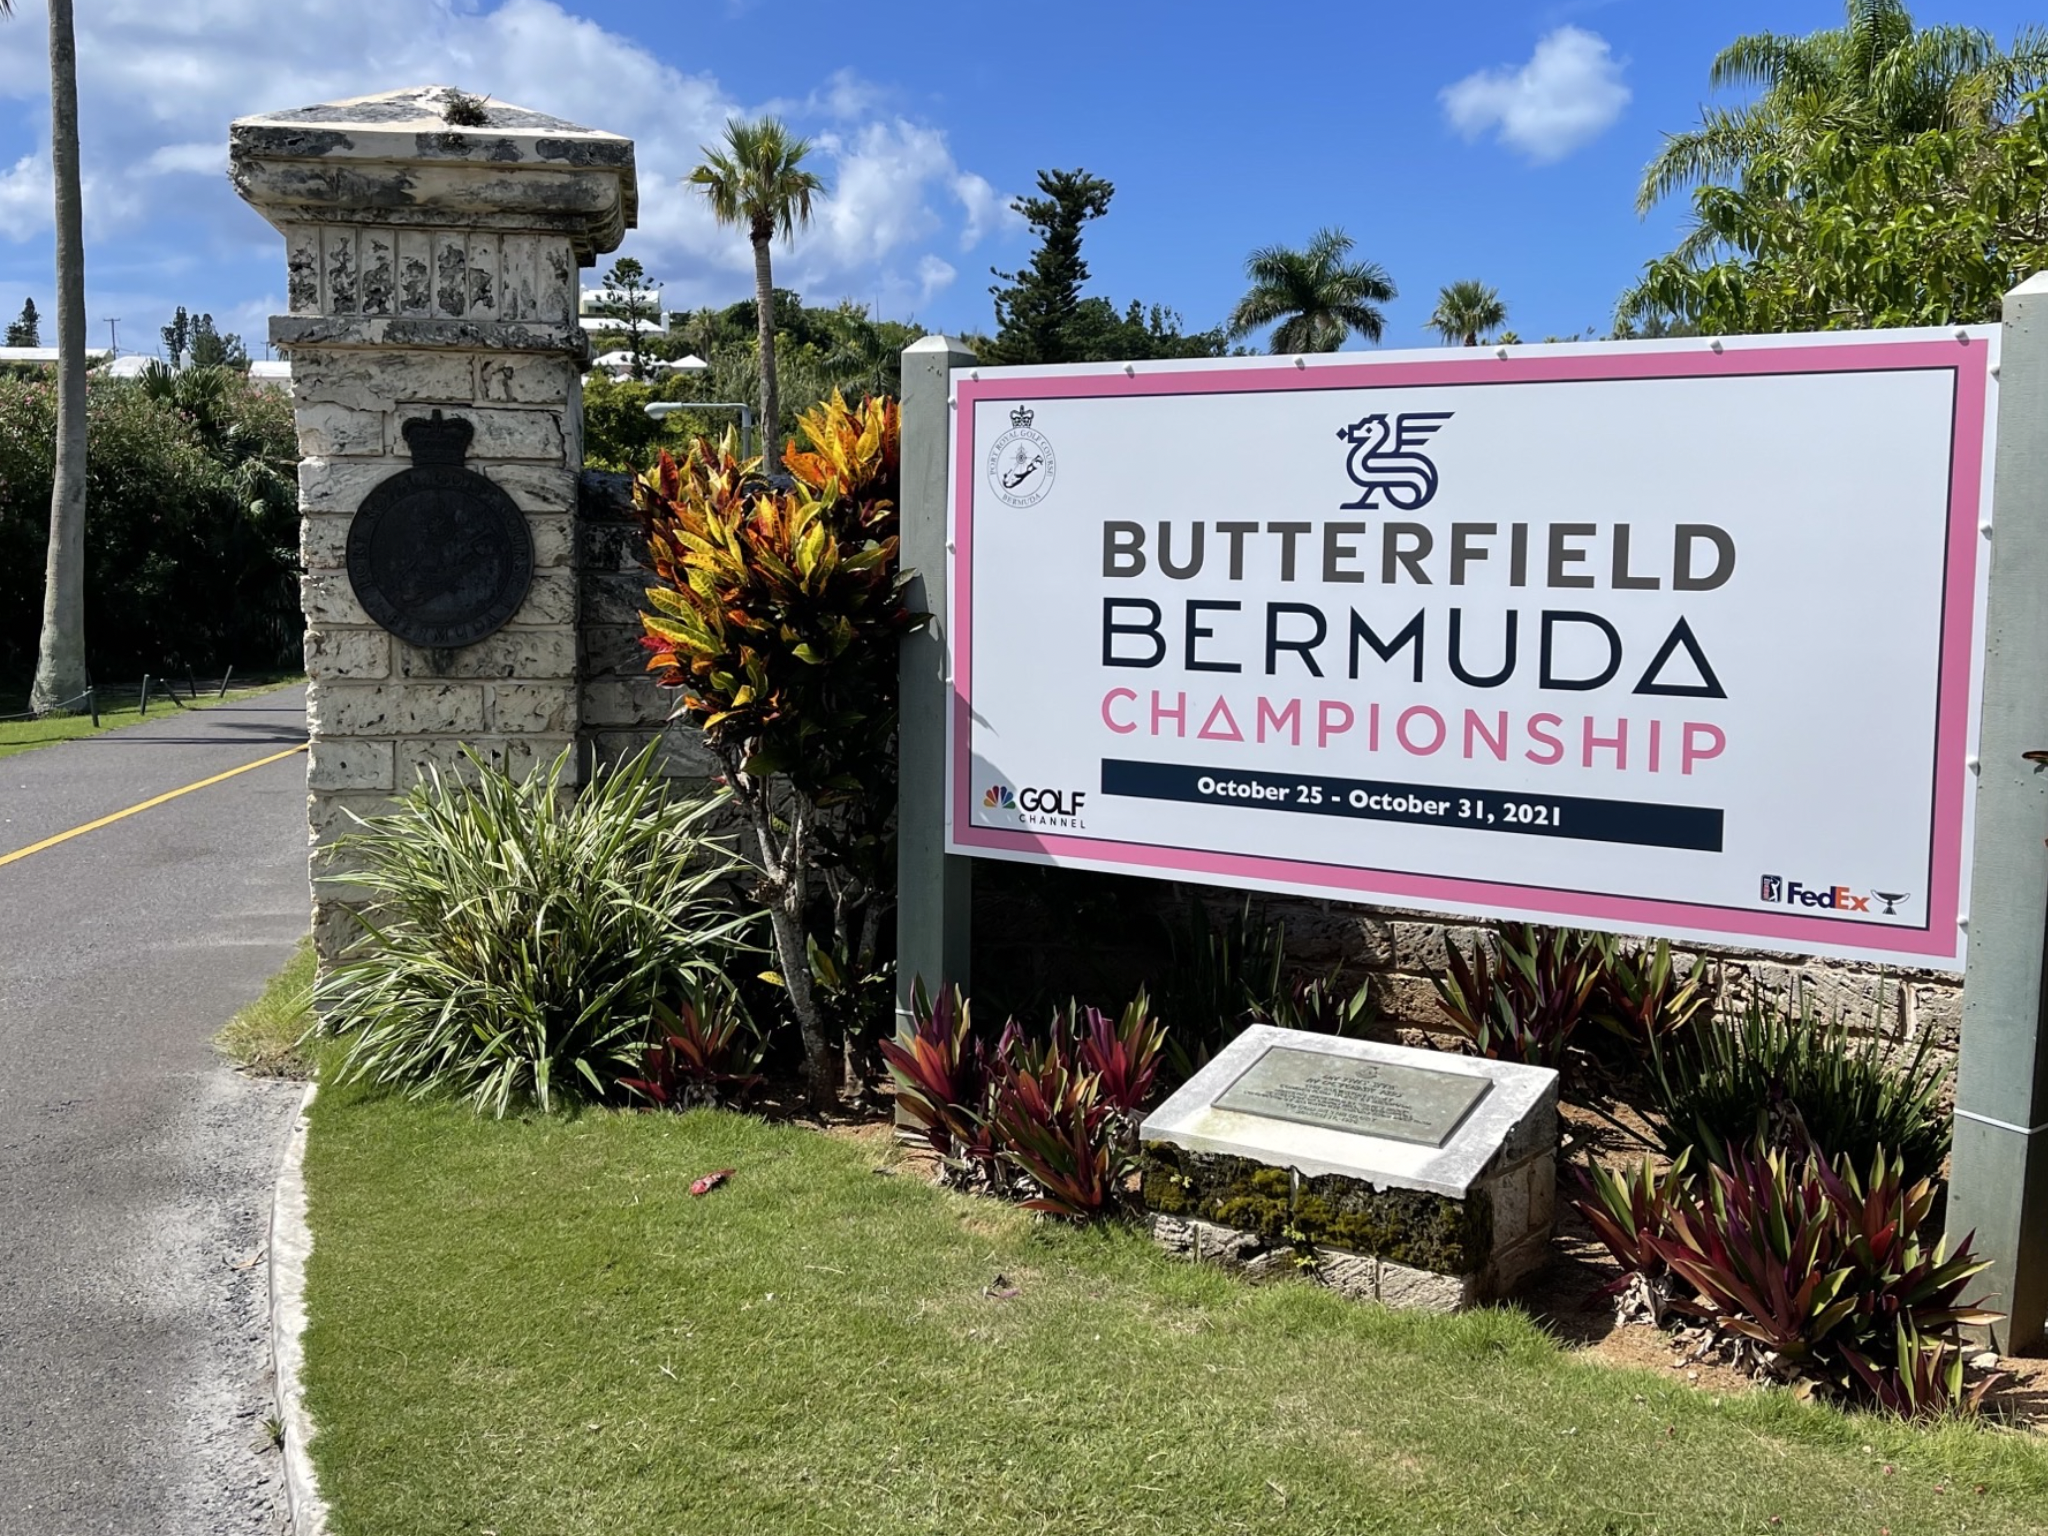 Butterfield Bermuda Championship: Cơ hội cho các golfer ngoài top 20 Thế giới